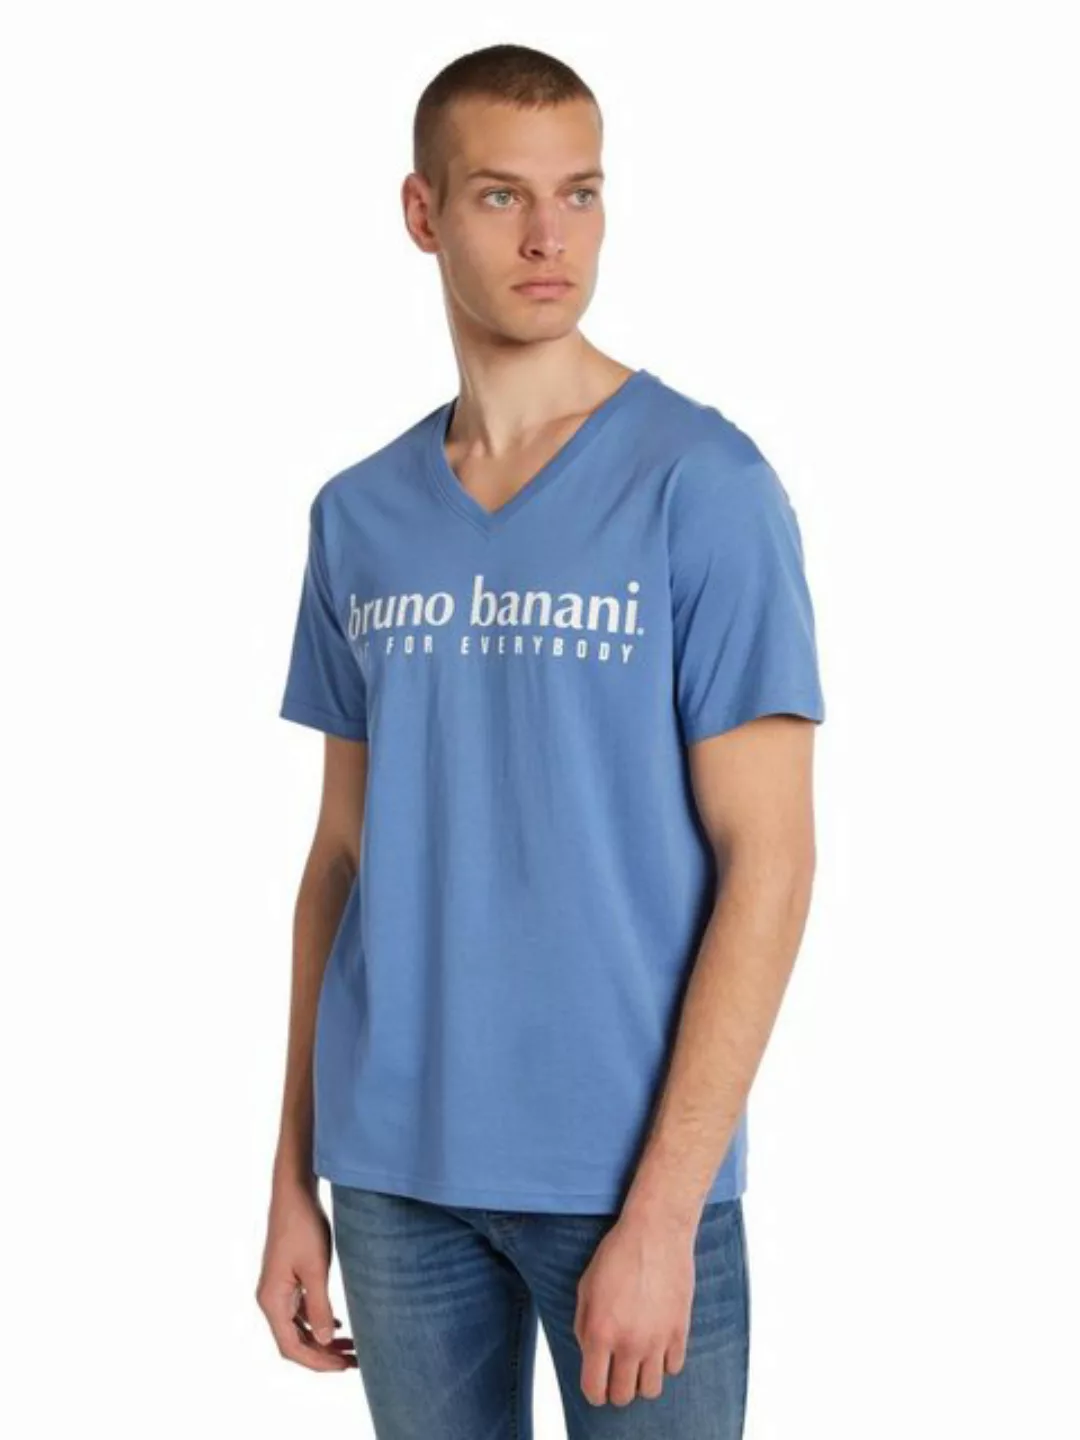 Bruno Banani T-Shirt Battle günstig online kaufen